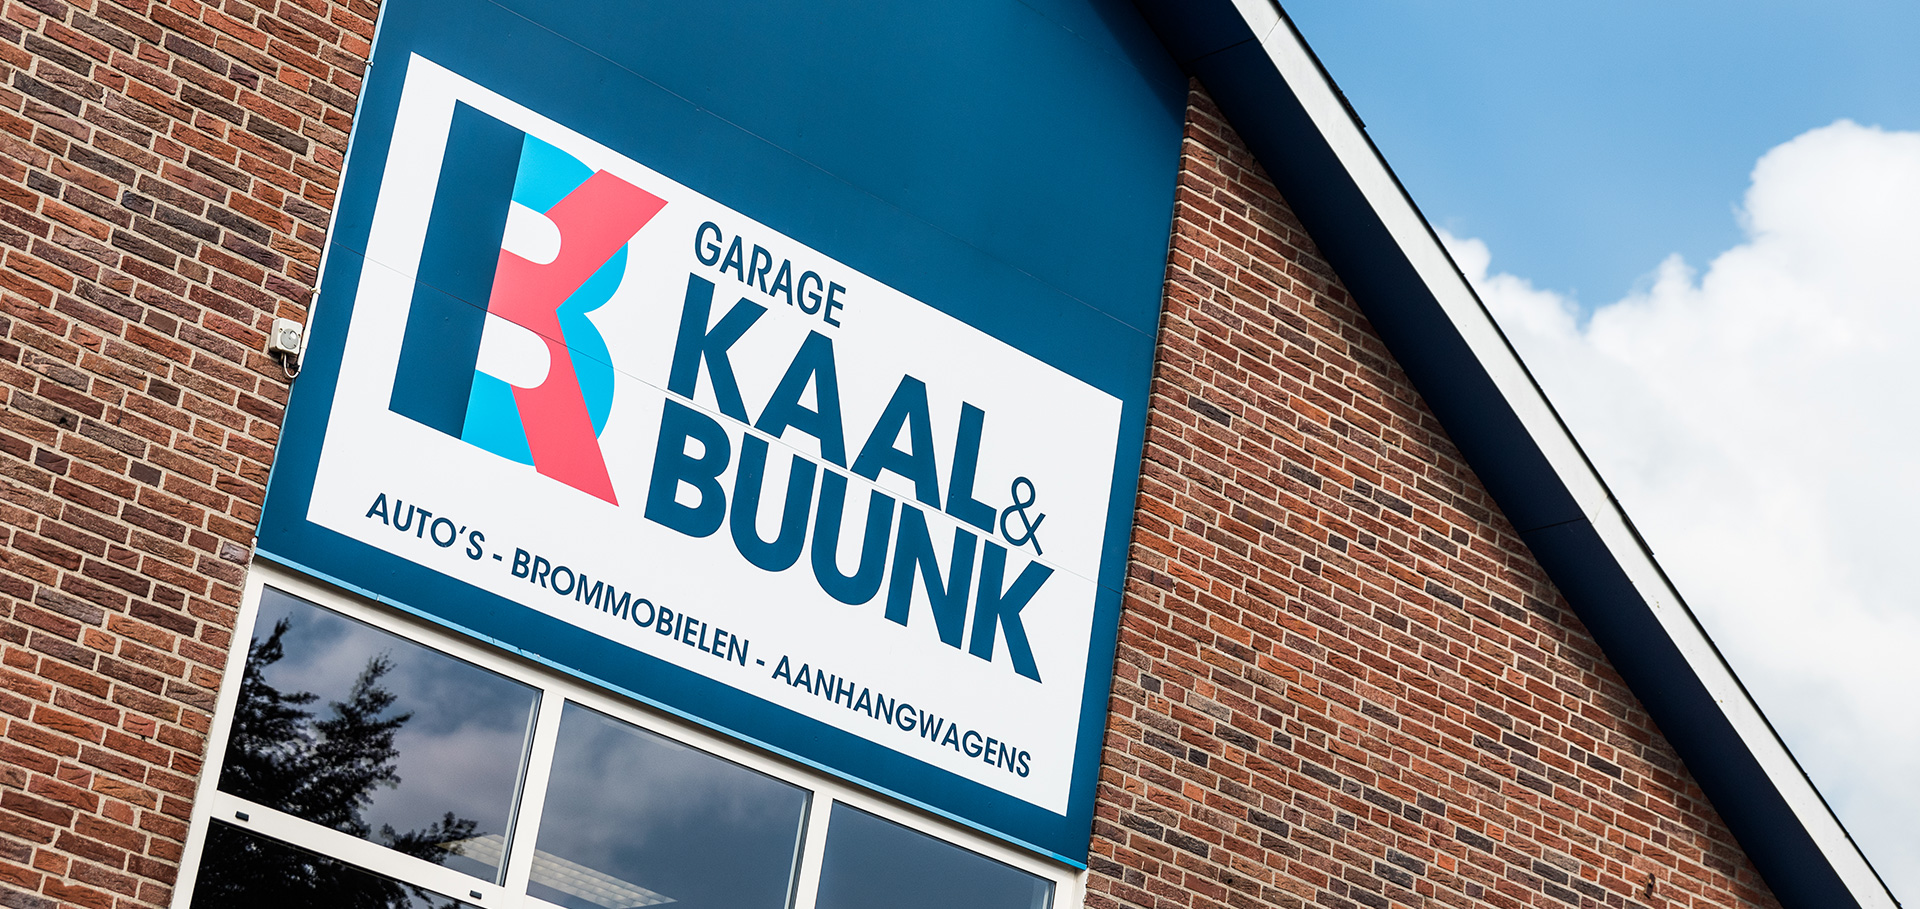 (c) Kaalbuunk.nl